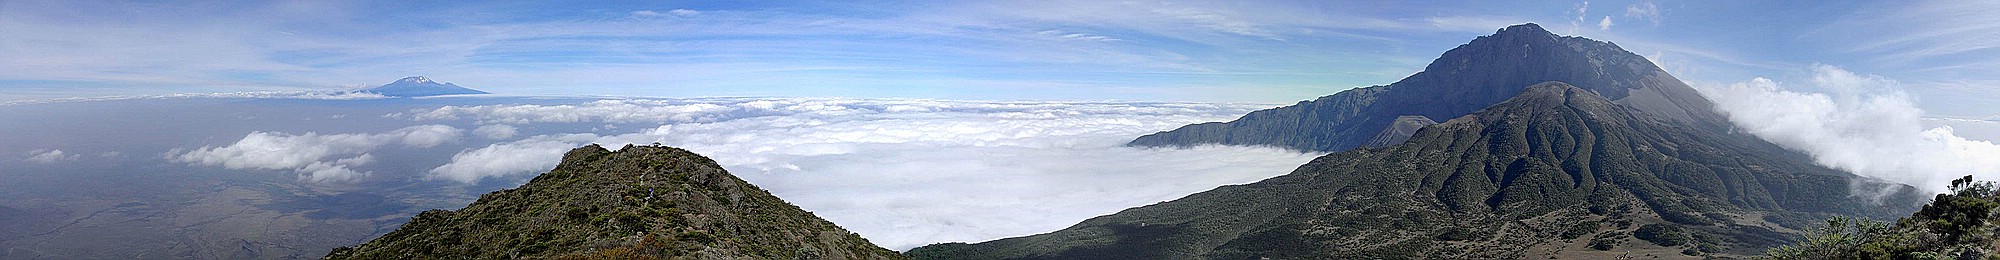 Mt Meru und Mt Kilimanjaro vom Little Meru aus